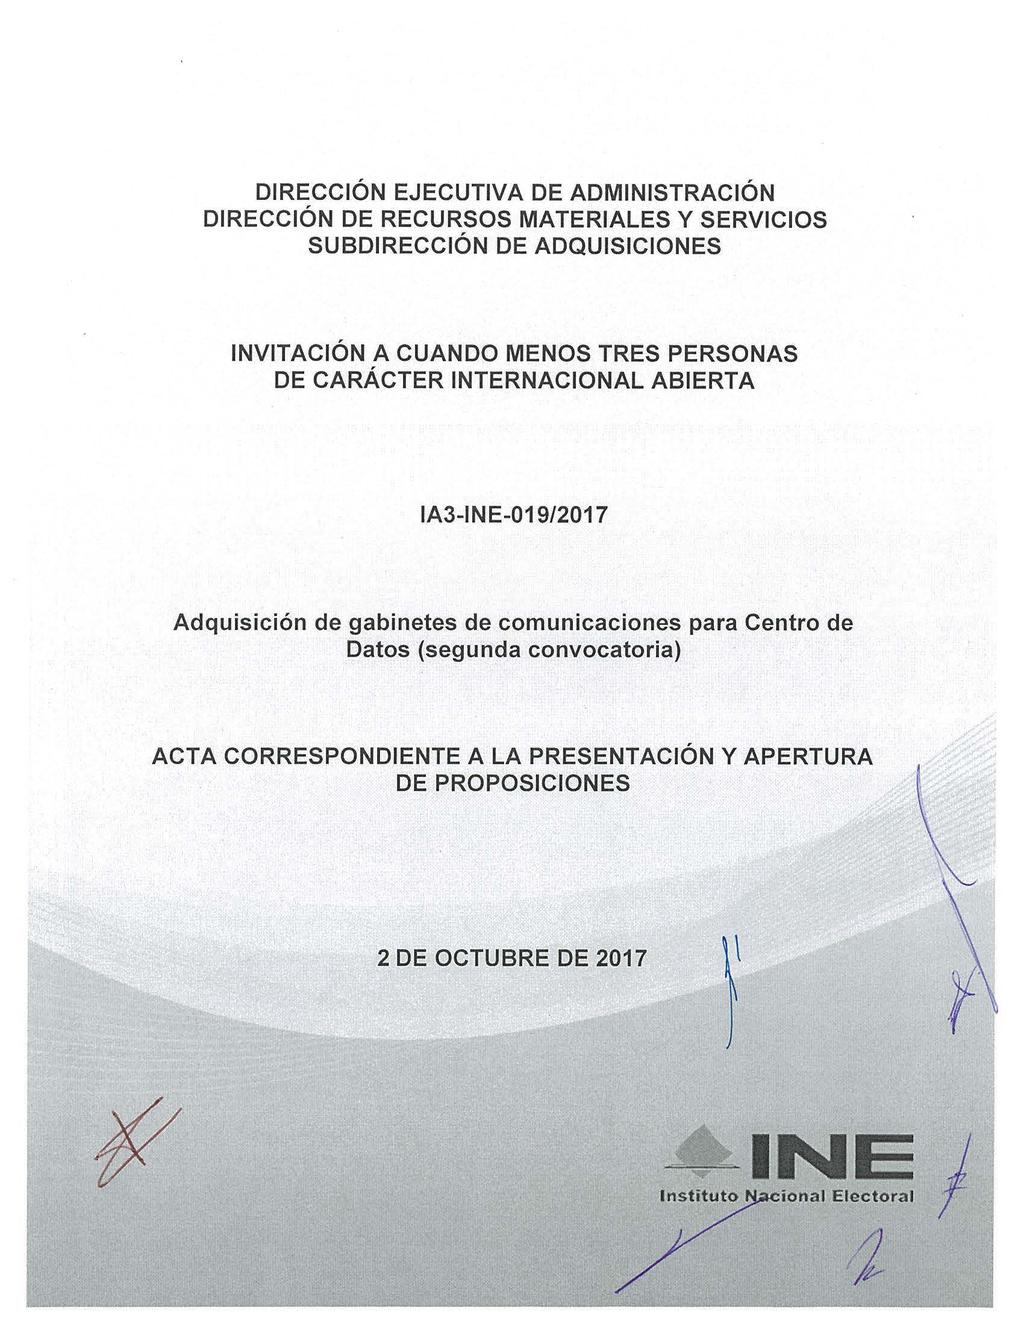 INVITACIÓN A CUANDO MENOS TRES PERSONAS DE CARÁCTER INTERNACIONAL ABIERTA IAJ-INE-09/207 Adquisición de gabinetes de comunicaciones